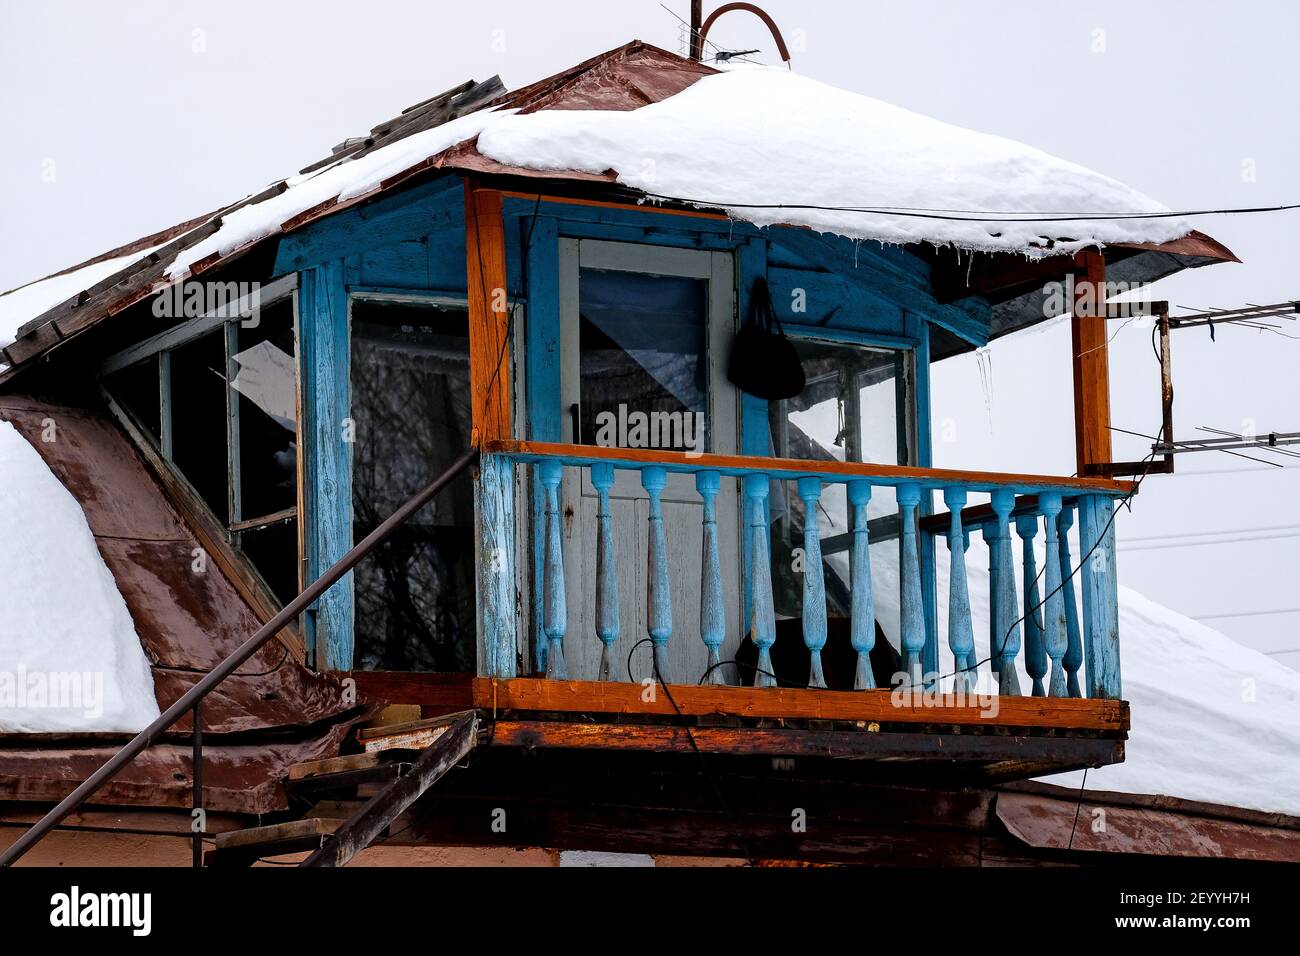 Bashkiria, Russie - 01.30.2021: Ancien balcon décré ouvert dans le village russe. Ciel d'hiver flou tout autour. Banque D'Images